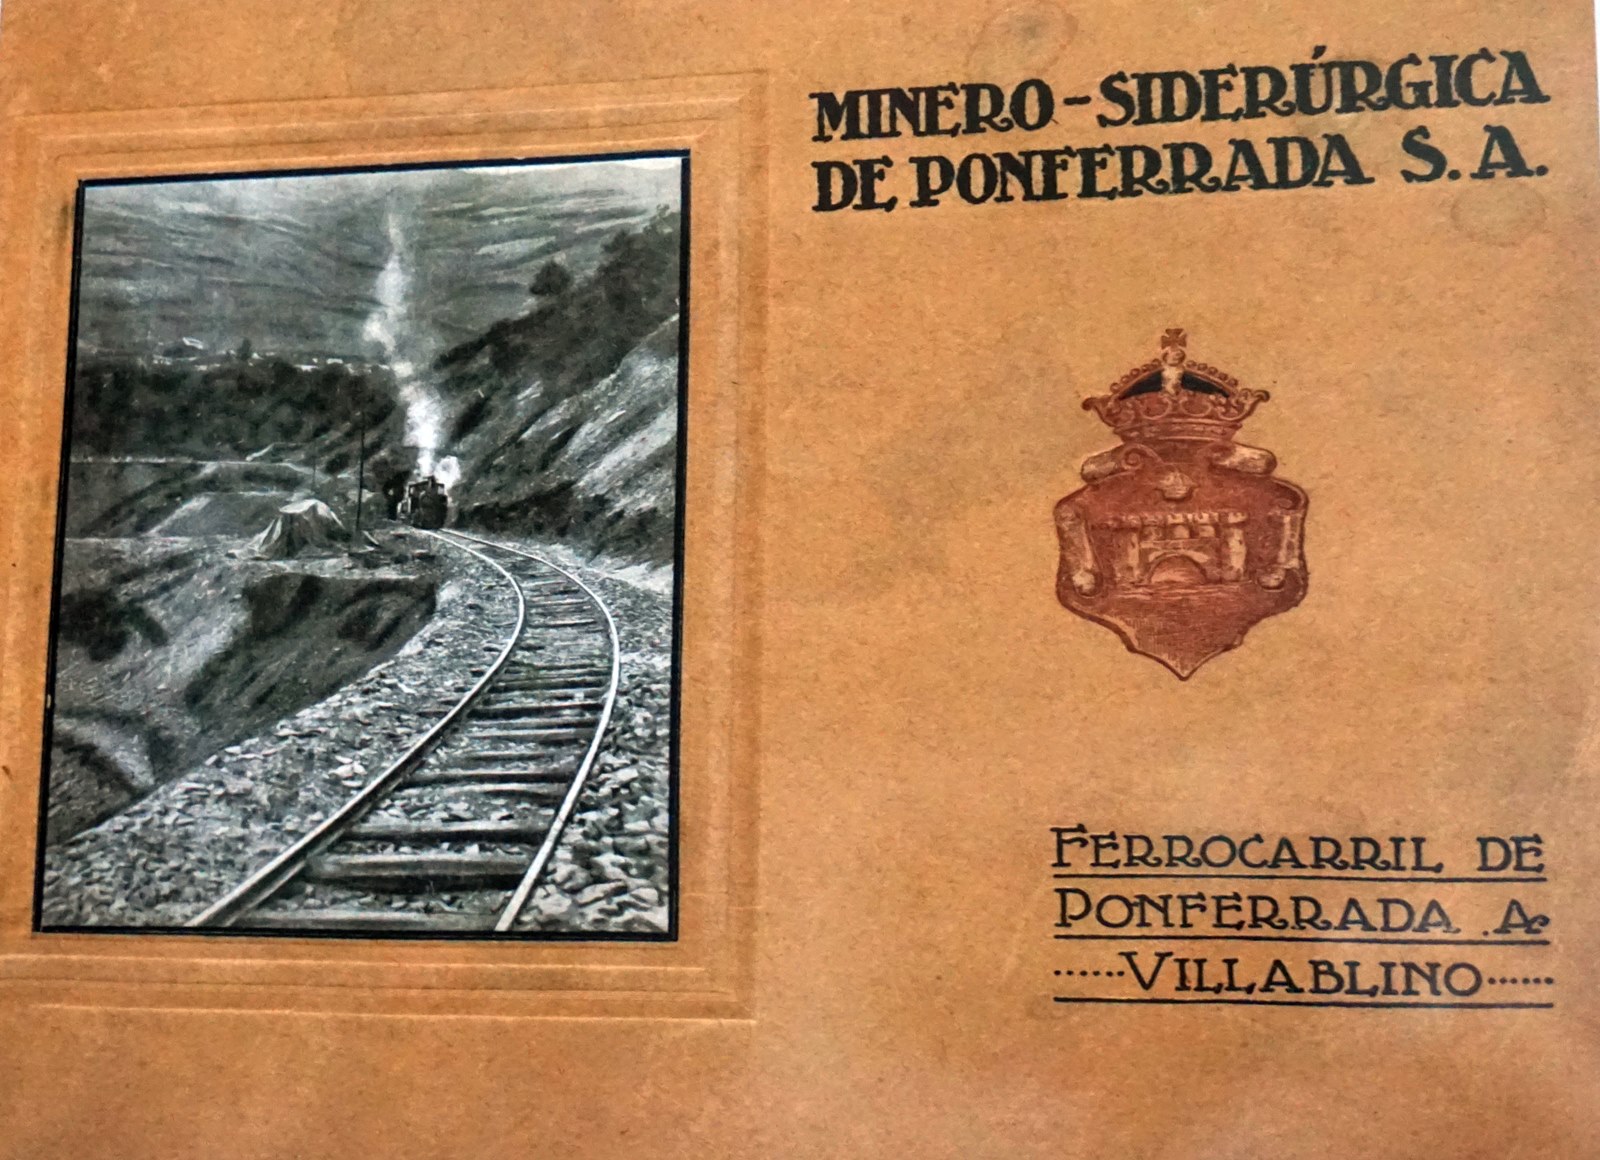 EXPOSICIÓN TEMPORAL: "EL FERROCARRIL PONFERRADA-VILLABLINO UN SIGLO DE HISTORIA".